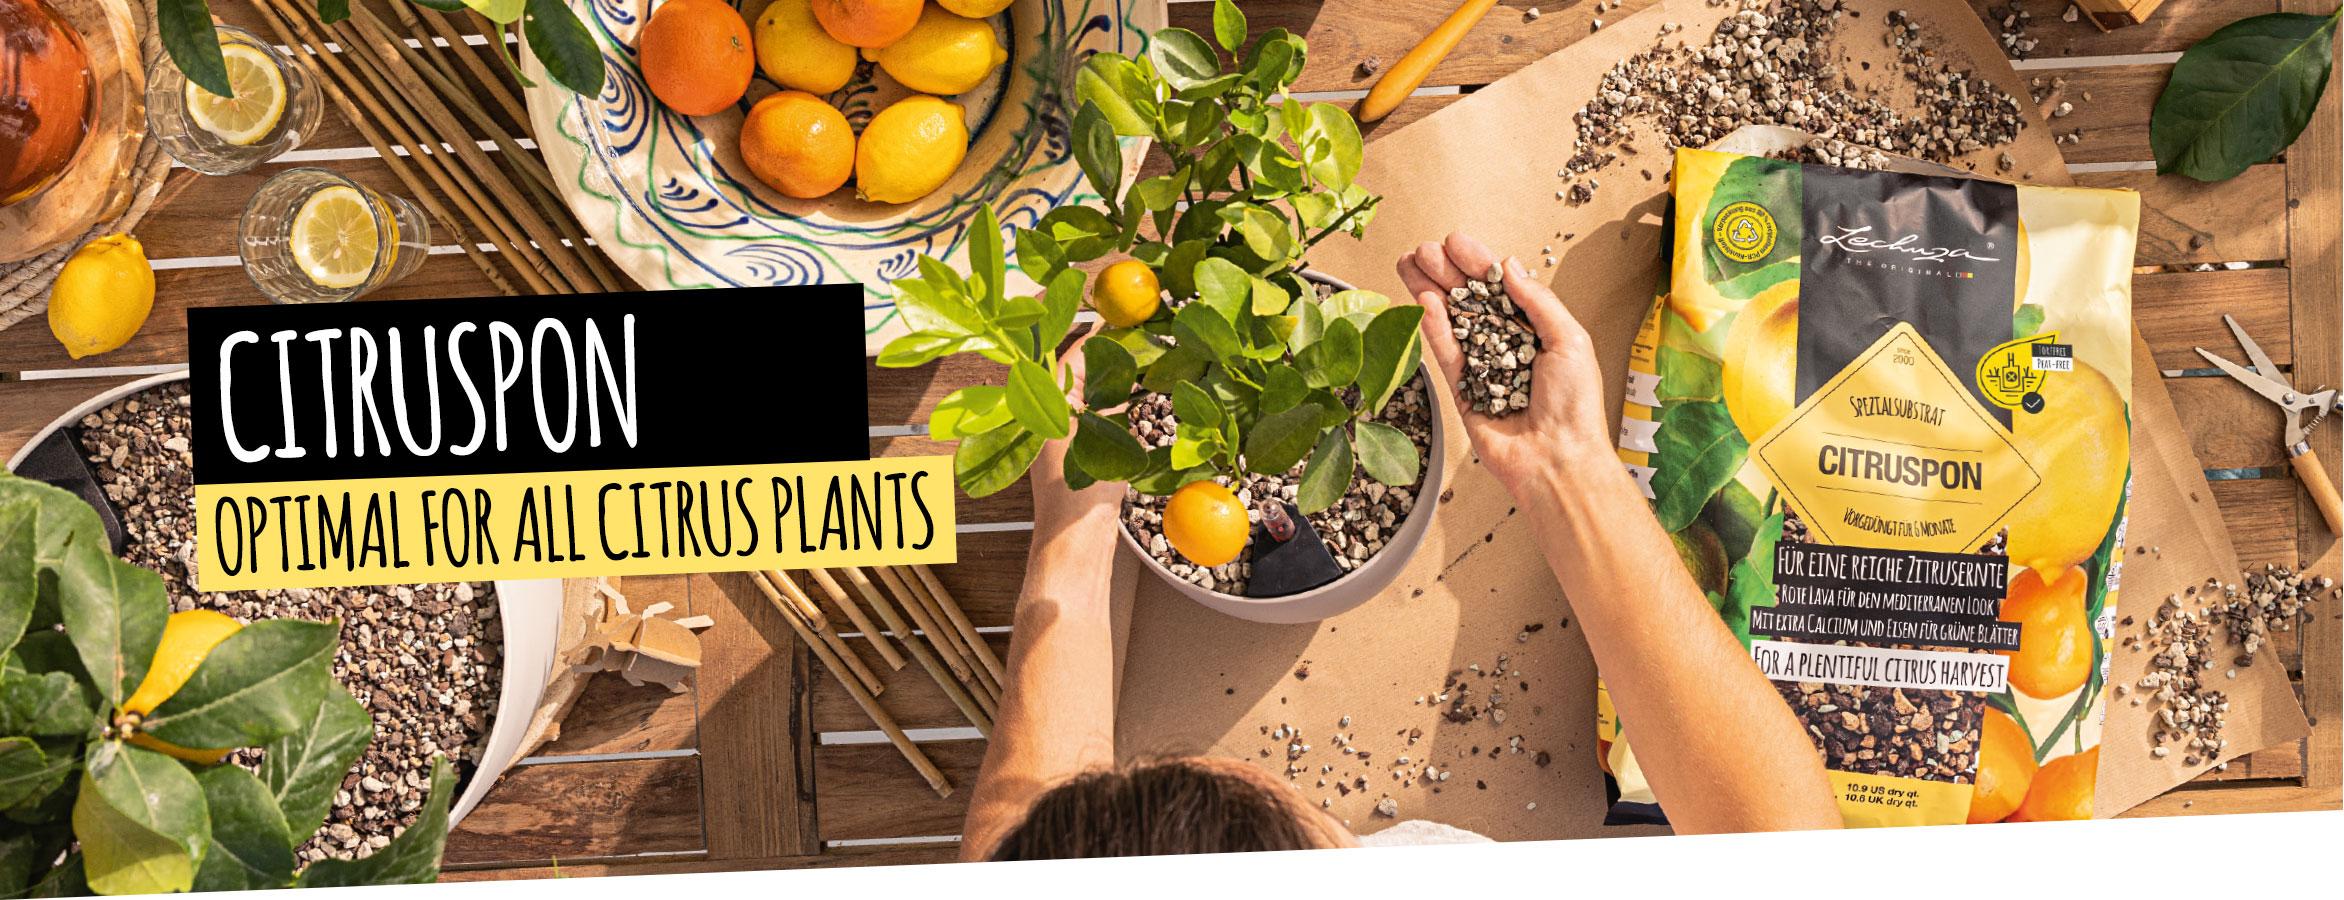 CITRUSPON: Optimal for all citrus plants